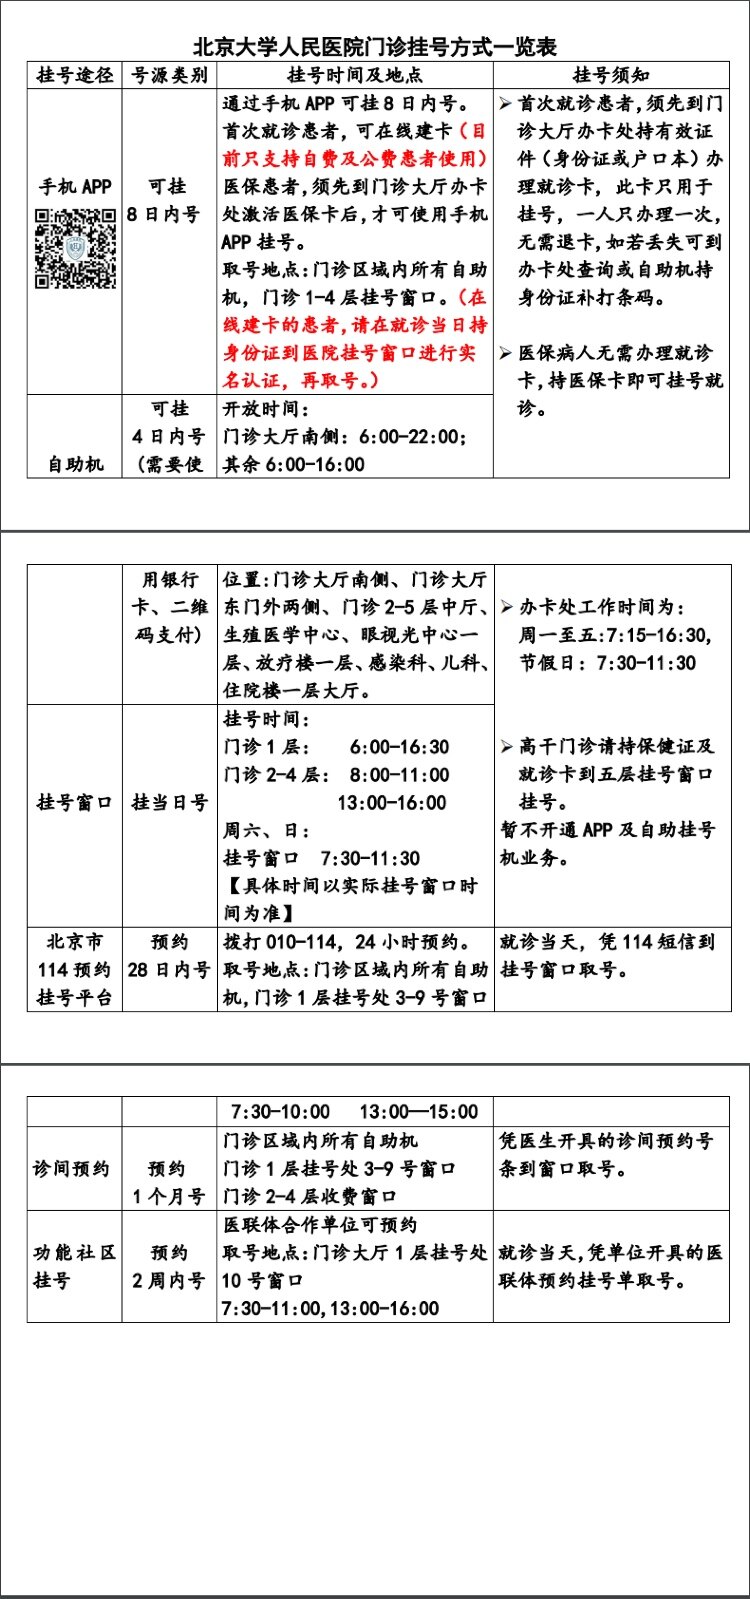 包含北大医院黄牛票贩子号贩子联系方式-推荐华夏医疗网的词条